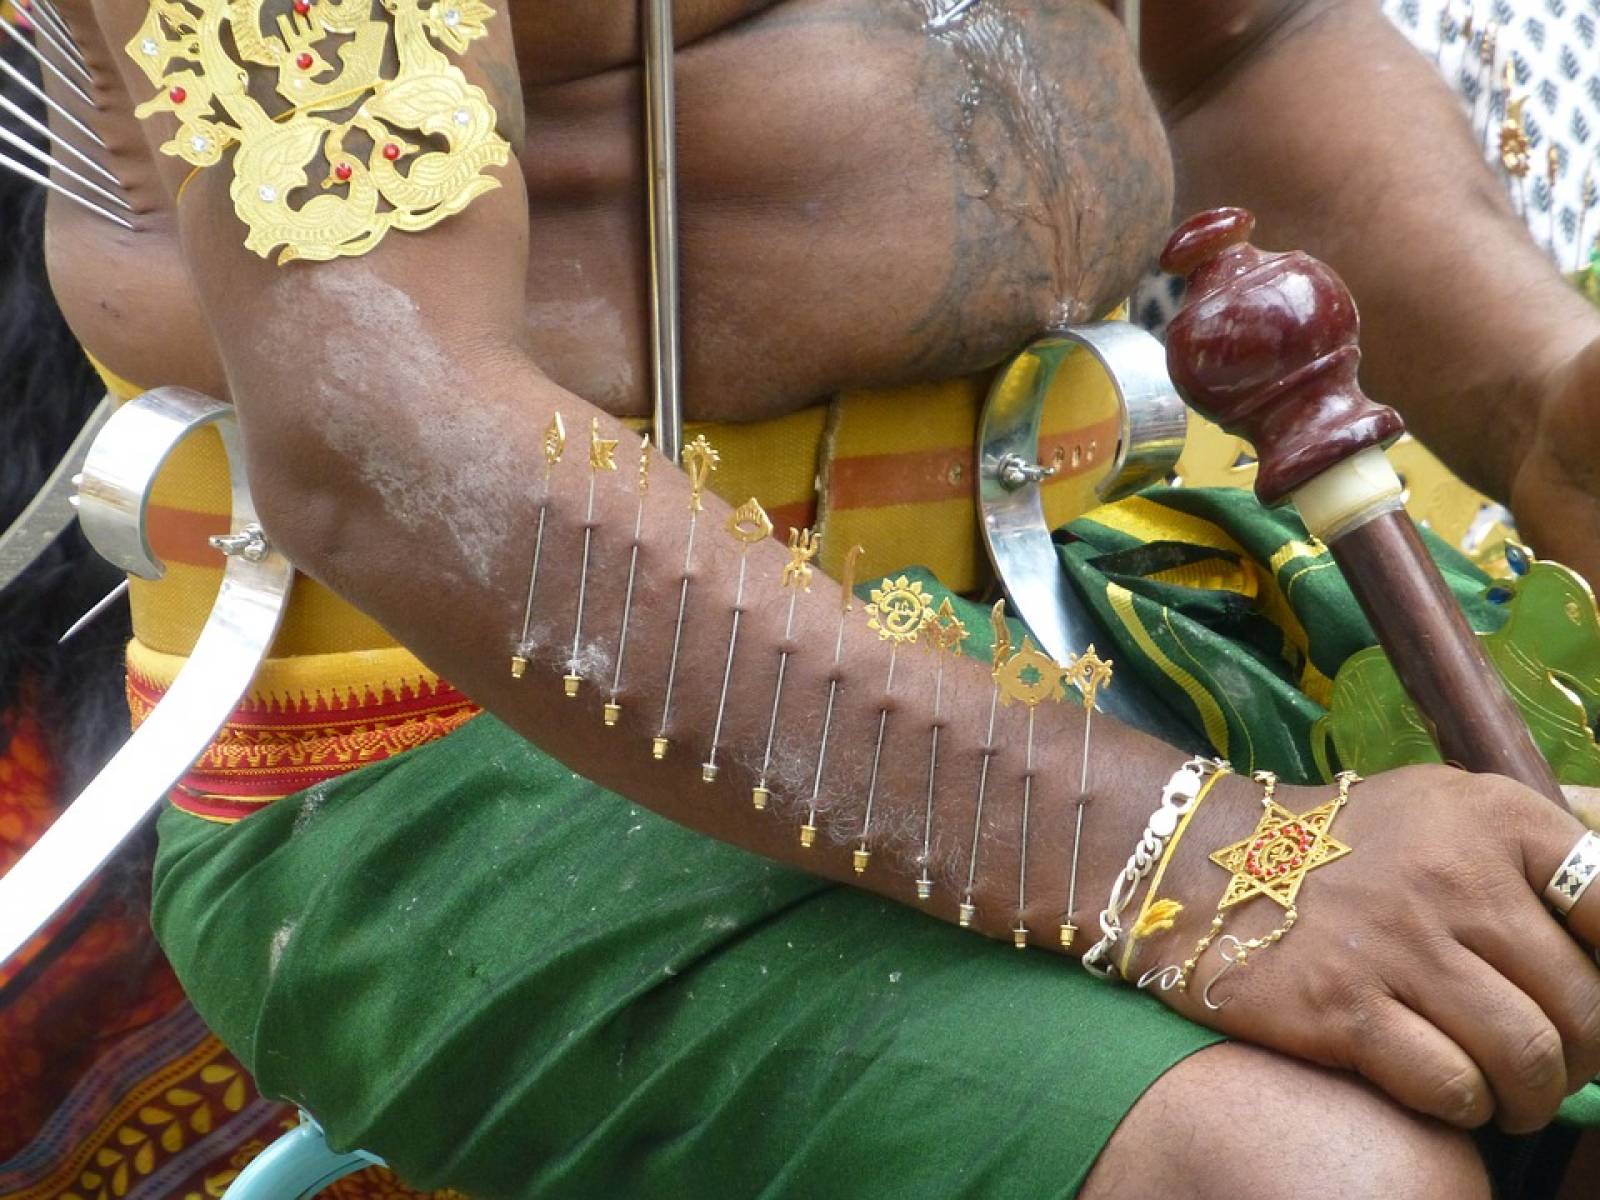 Des histoires de piercings, cultures et traditions